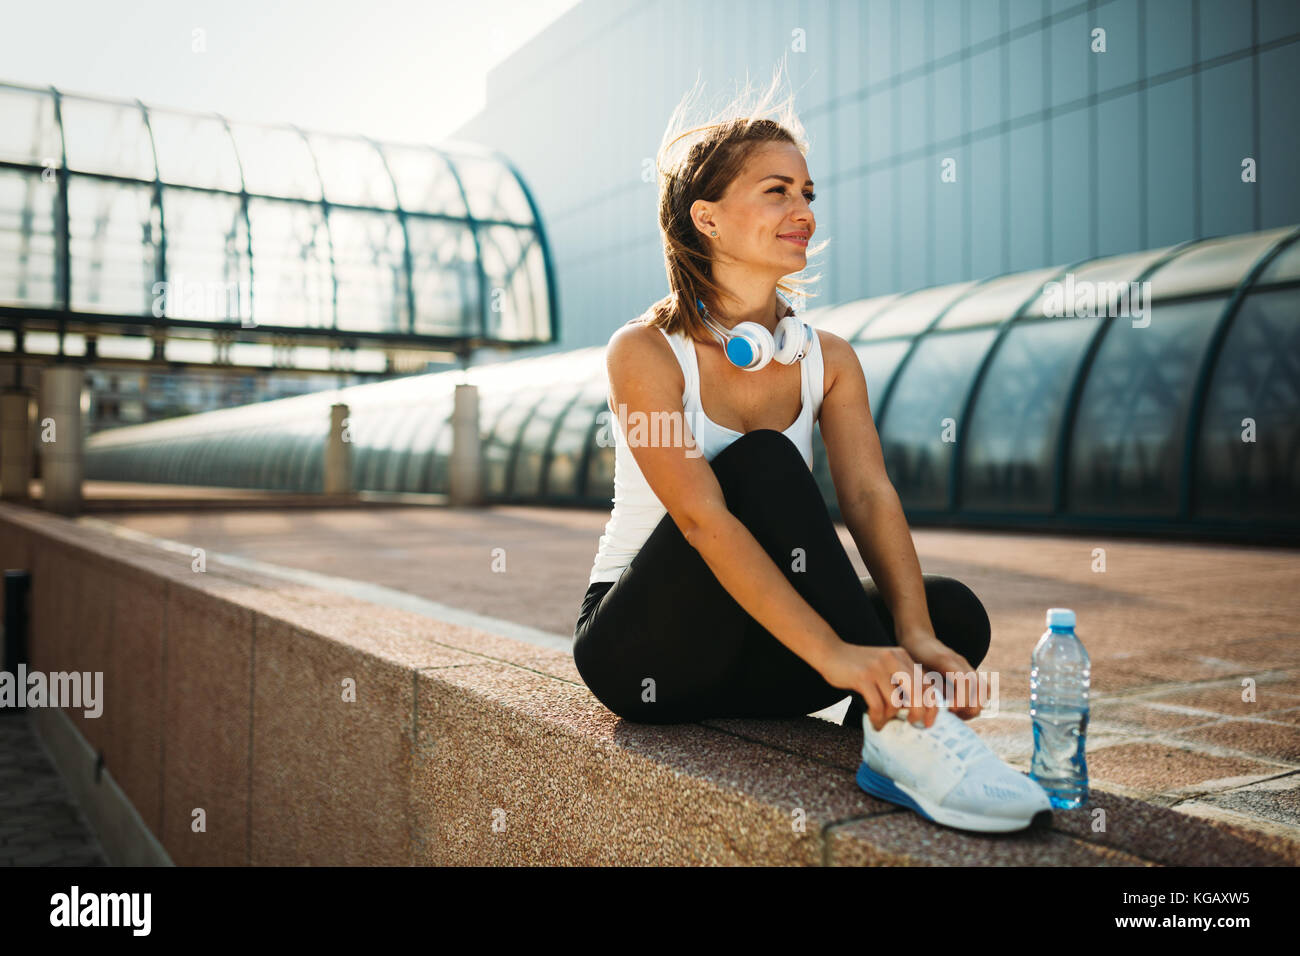 Bild von jungen attraktiven Happy fitness Frau Stockfoto